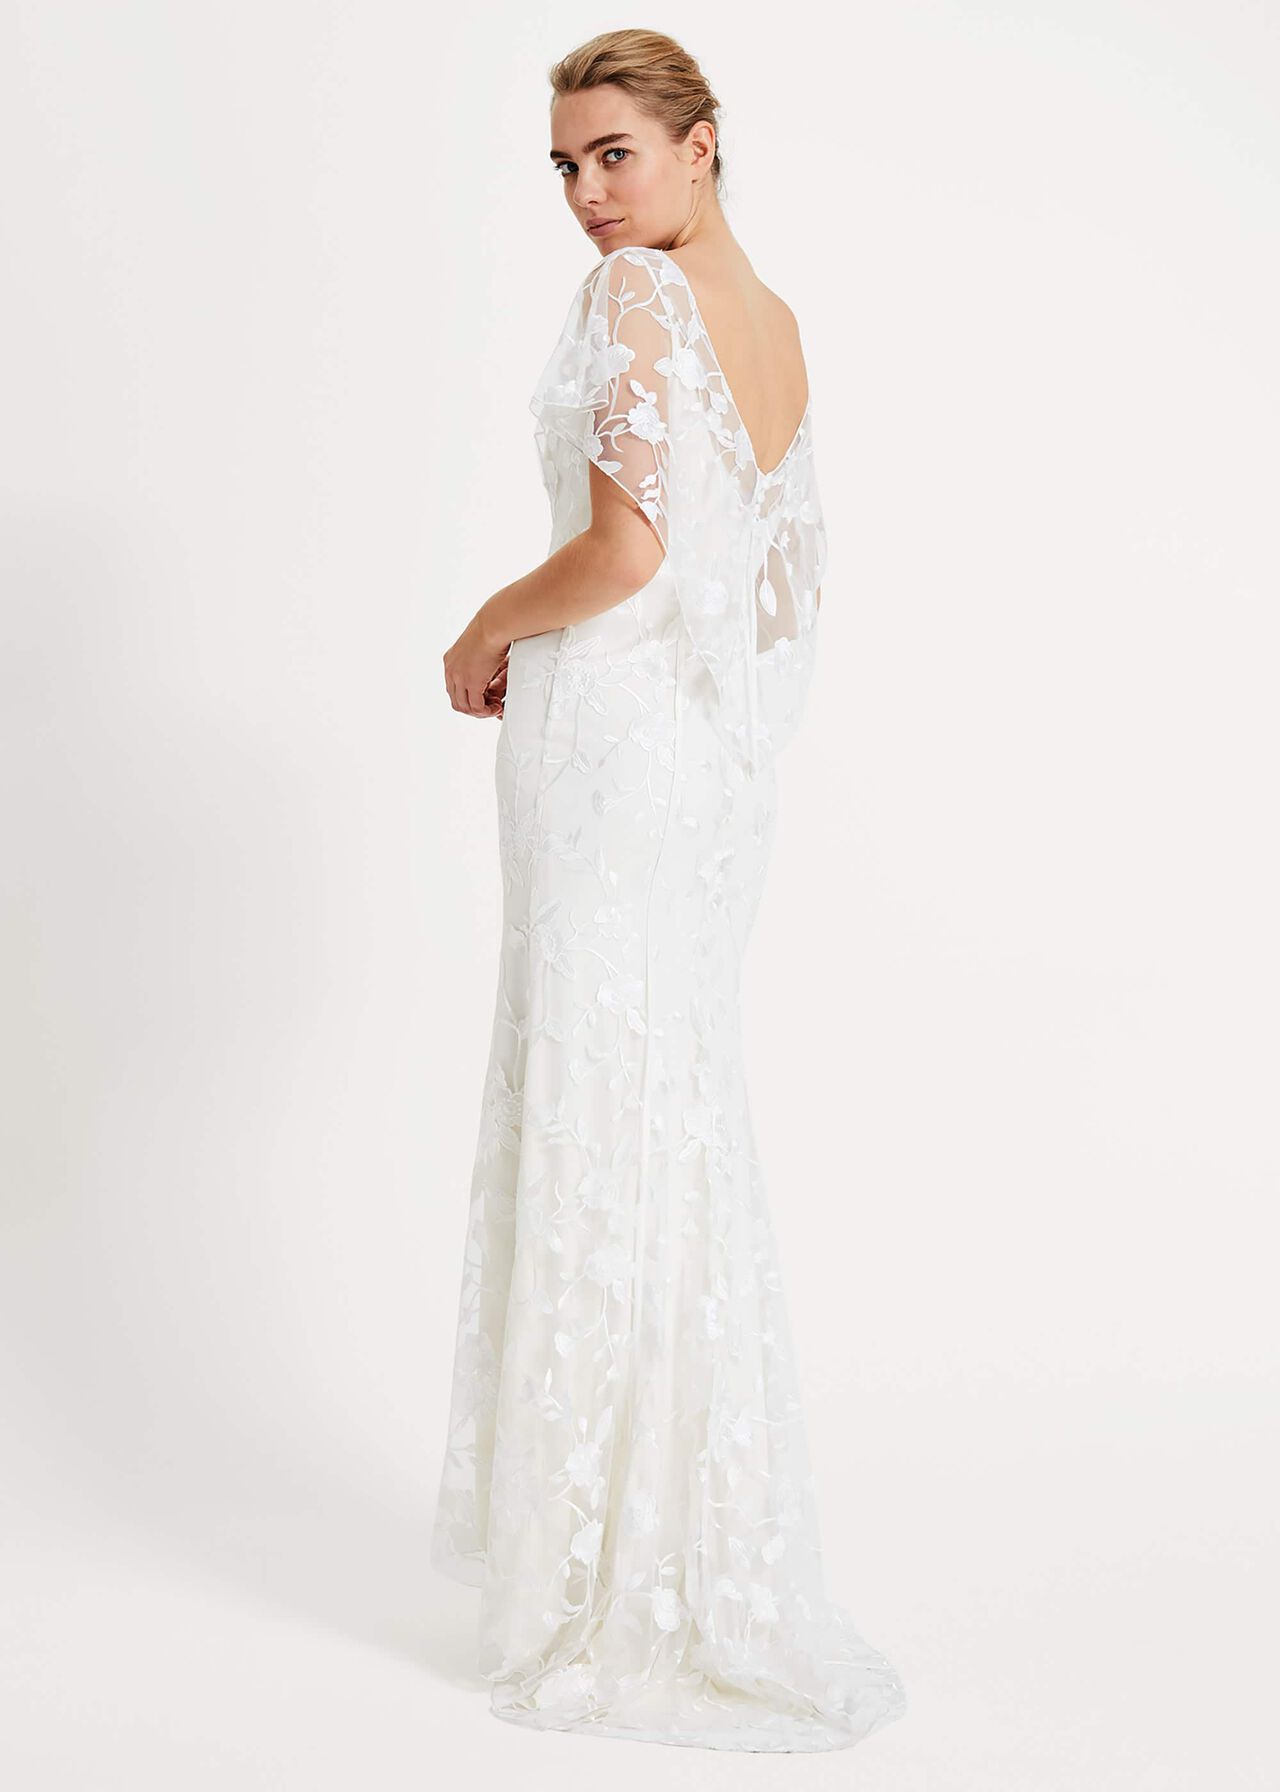 Layla Lace Wedding Dress